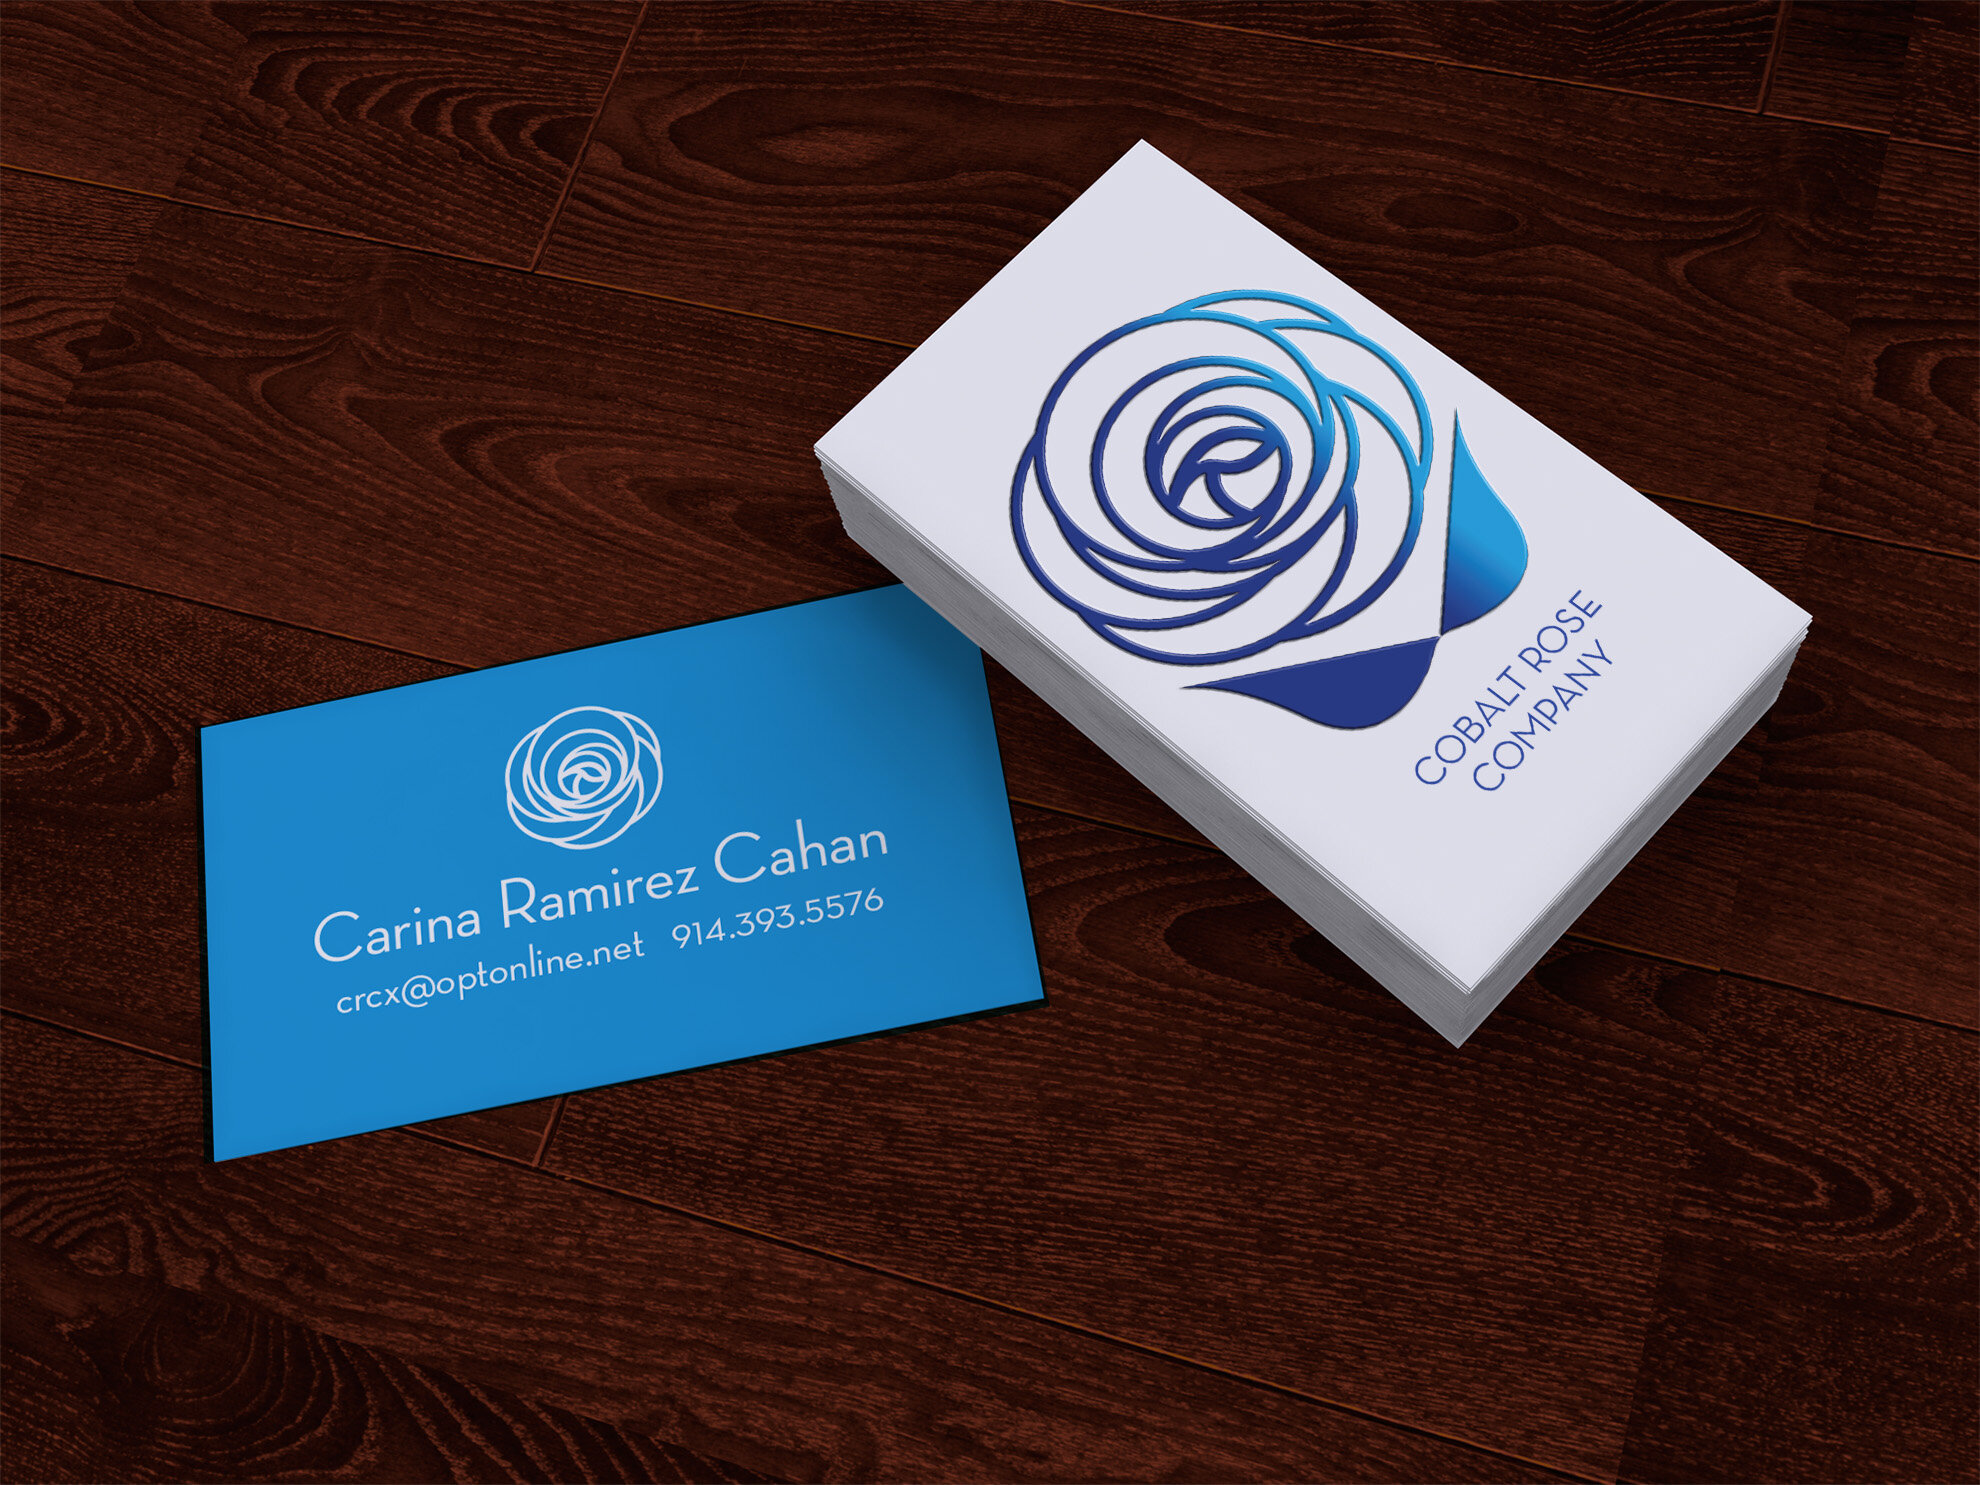 Cobalt Rose_business card mock up.jpg